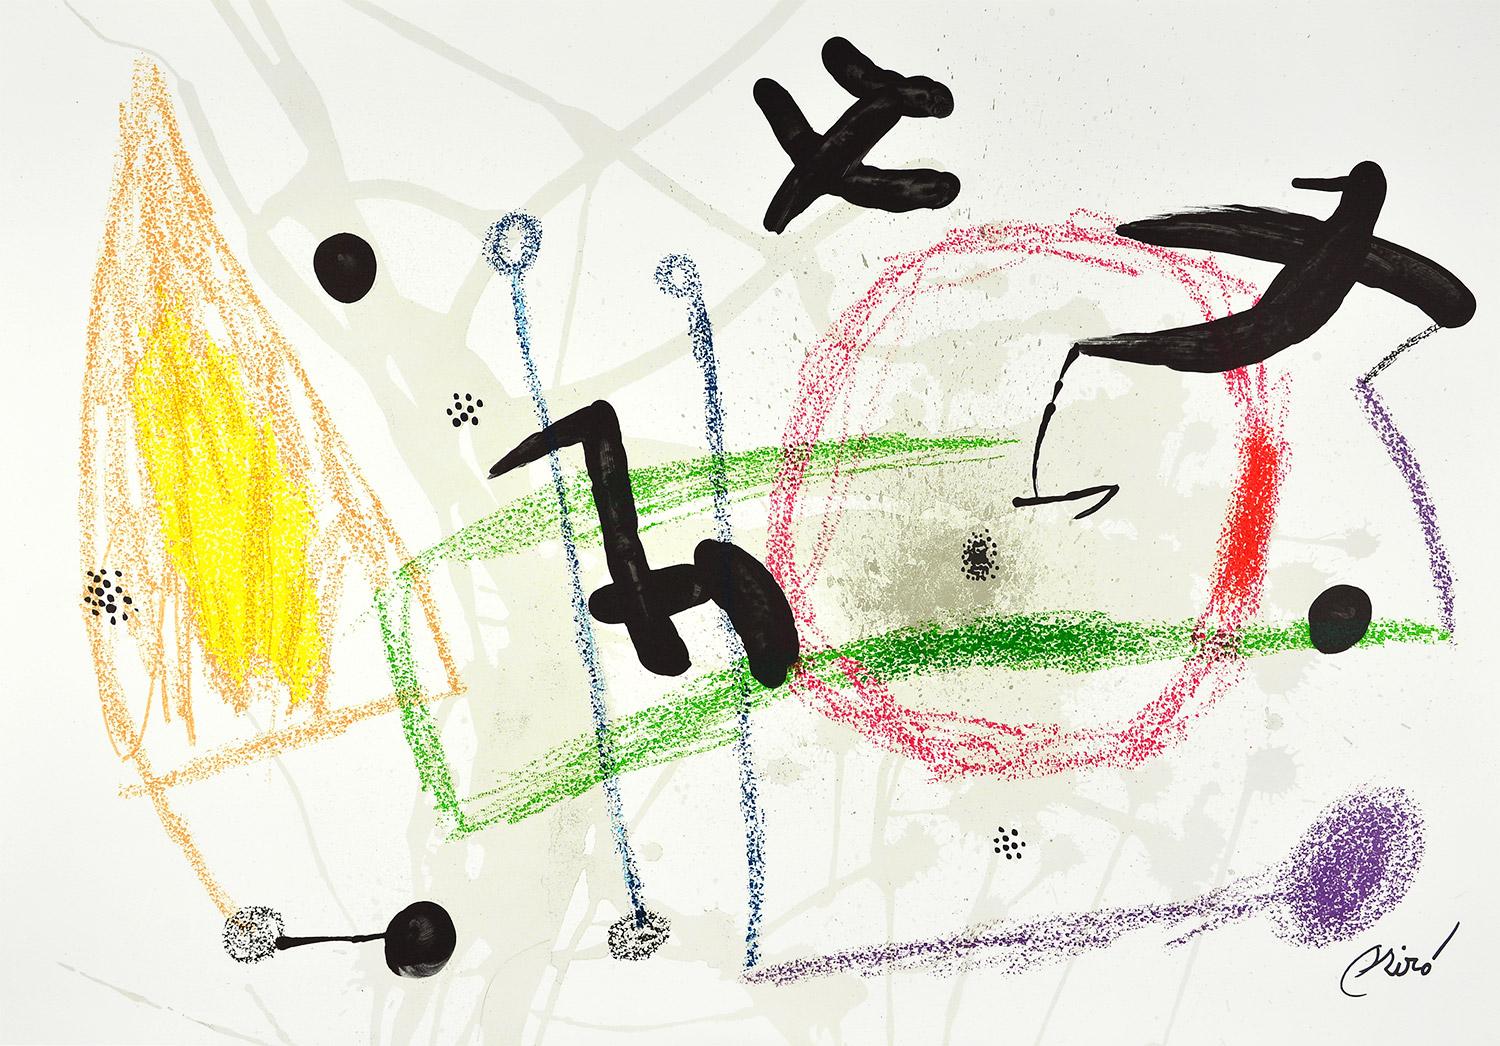 Joan Miró - Maravillas con variaciones acrósticas en el jardín de Miró V
Date de création : 1975
Support : Lithographie sur papier Gvarro
Édition : 1500
Taille : 49,5 x 71 cm
Observations : Lithographie sur plaque de papier Gvarro signée. Édité par